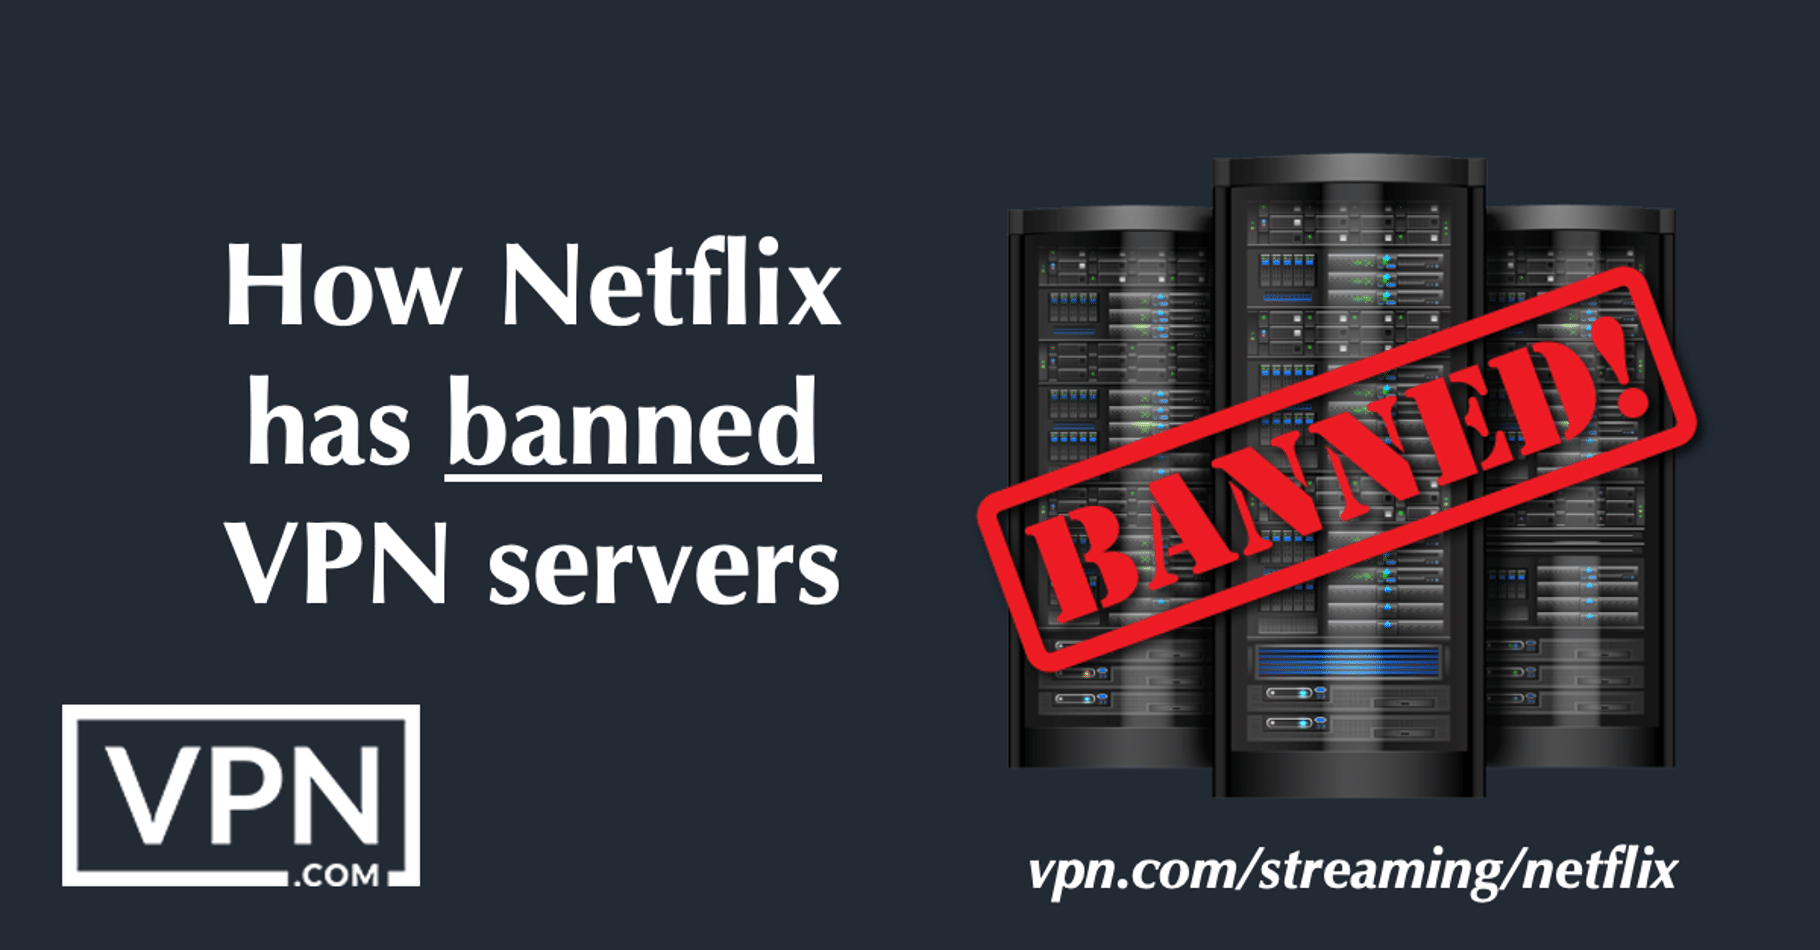 Como a Netflix baniu os servidores VPN.